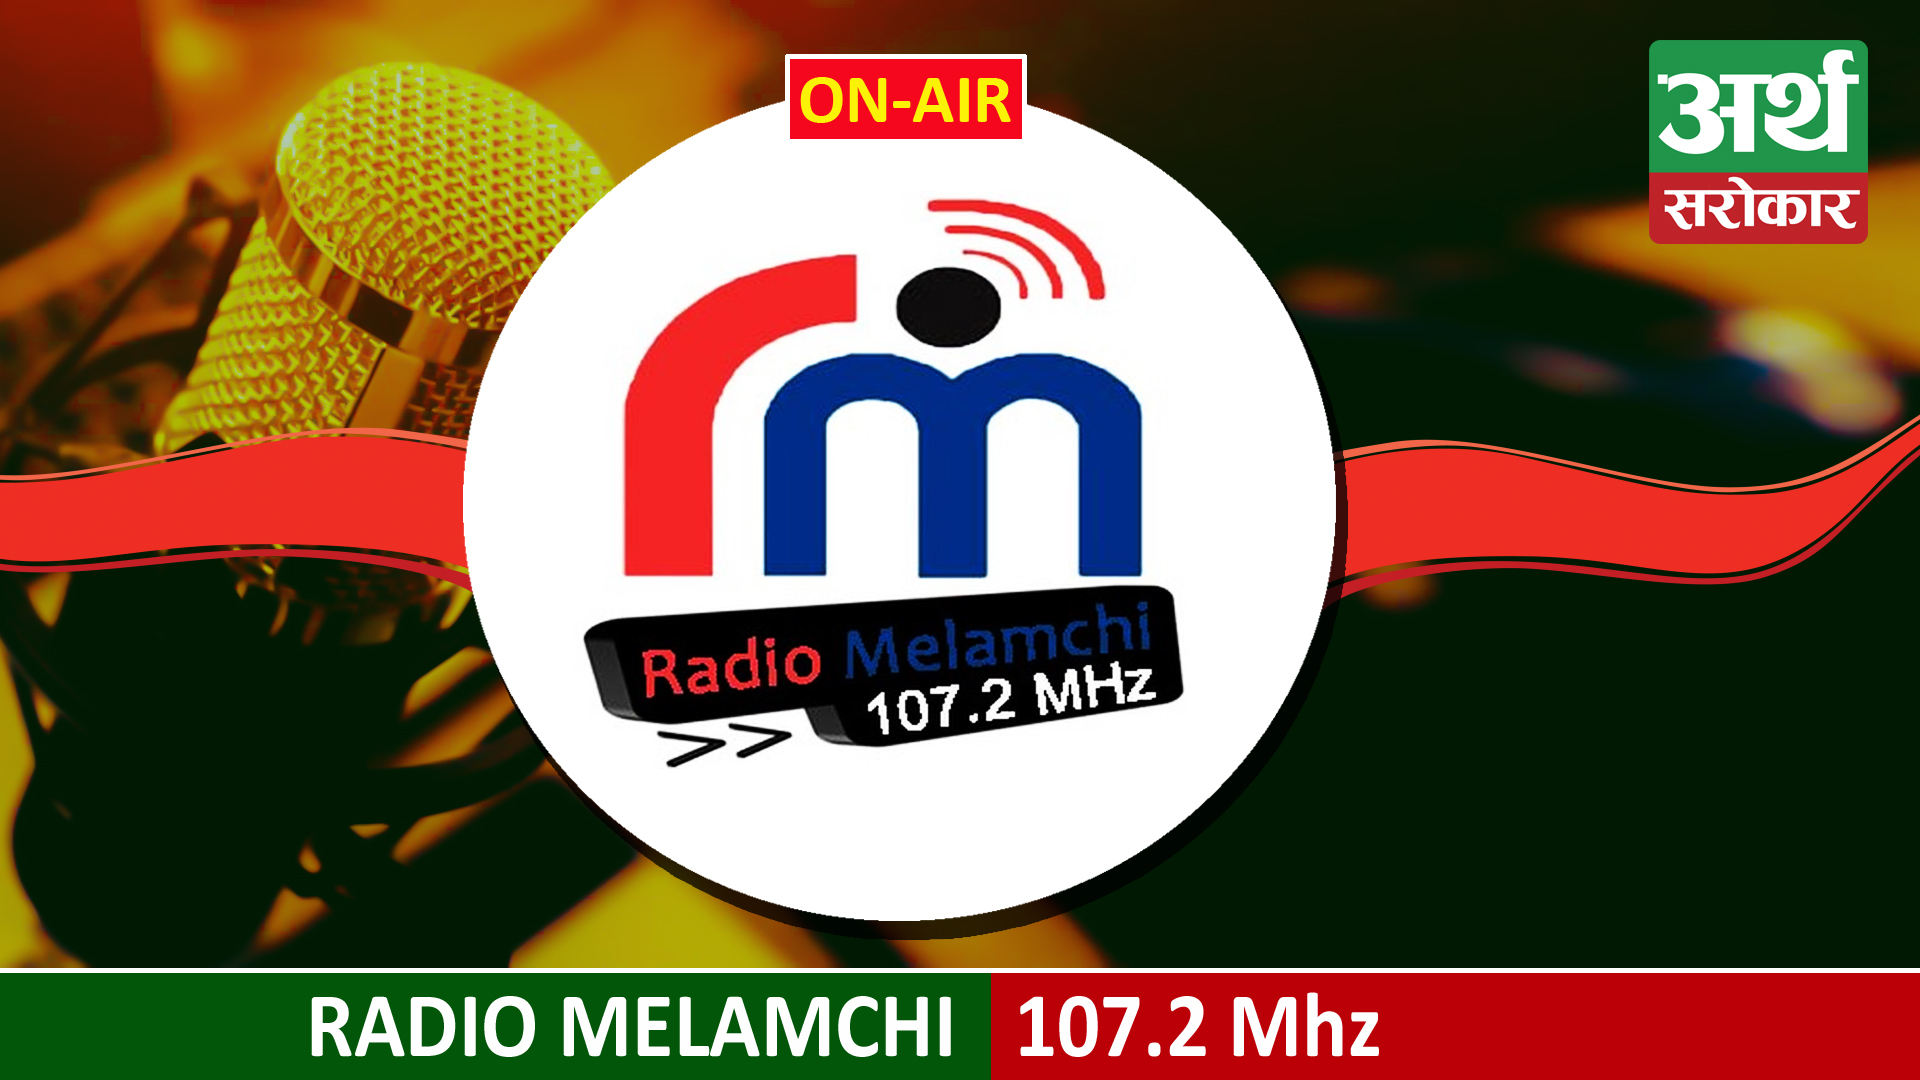 Melamchi Community FM 107.2 MHz